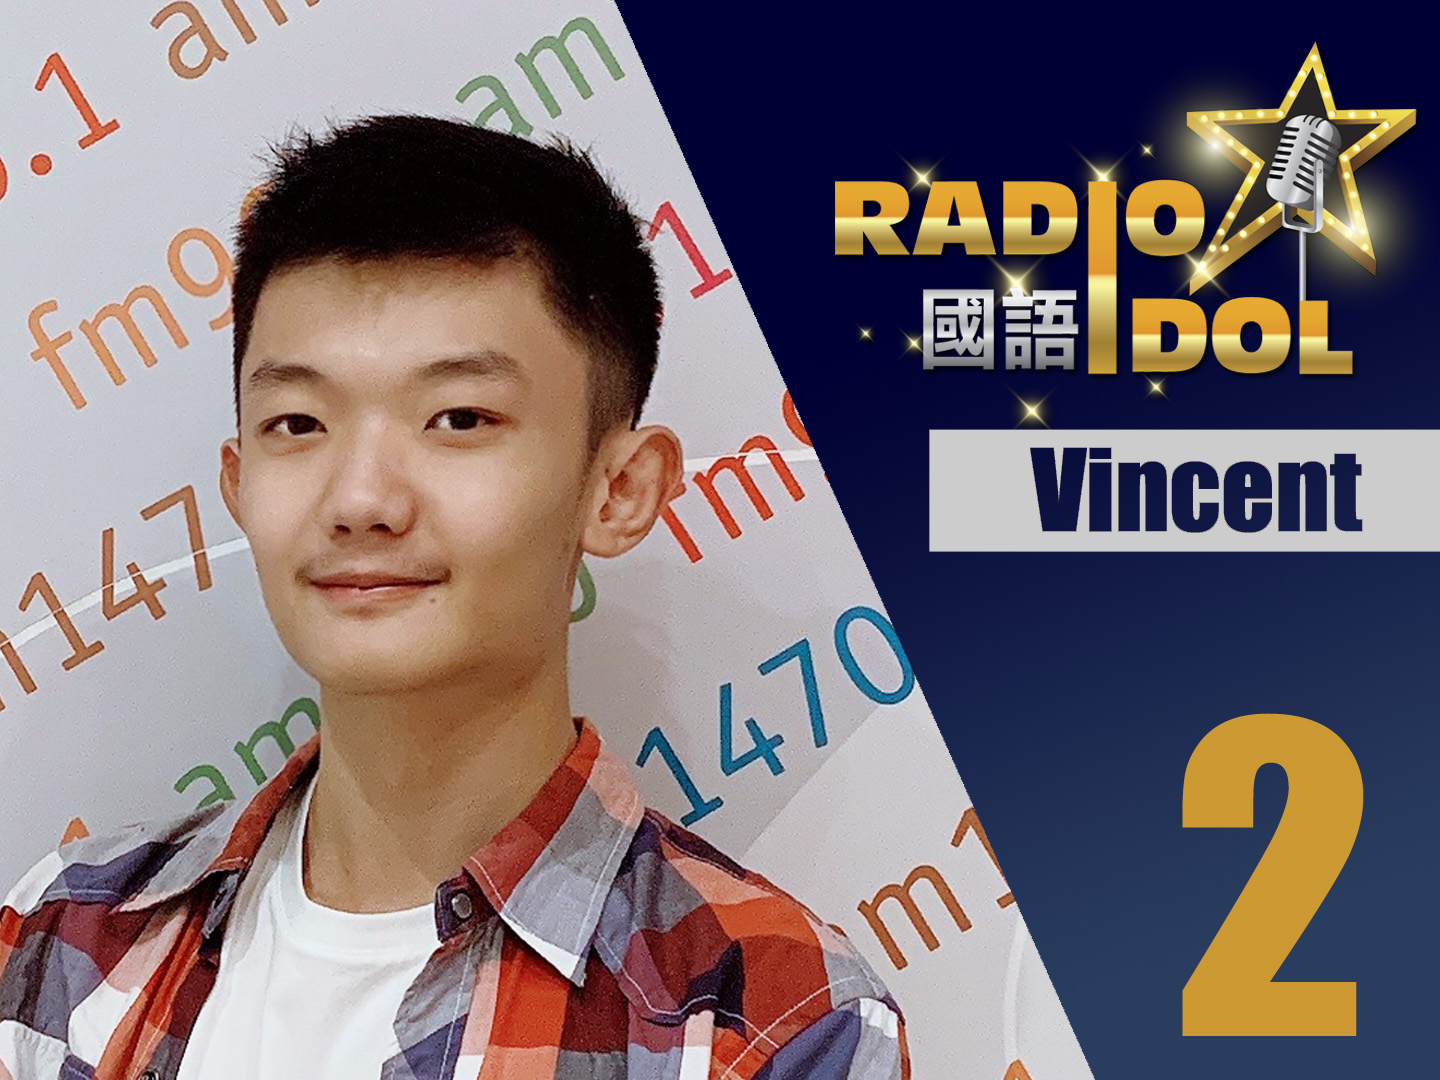 #2 Vincent